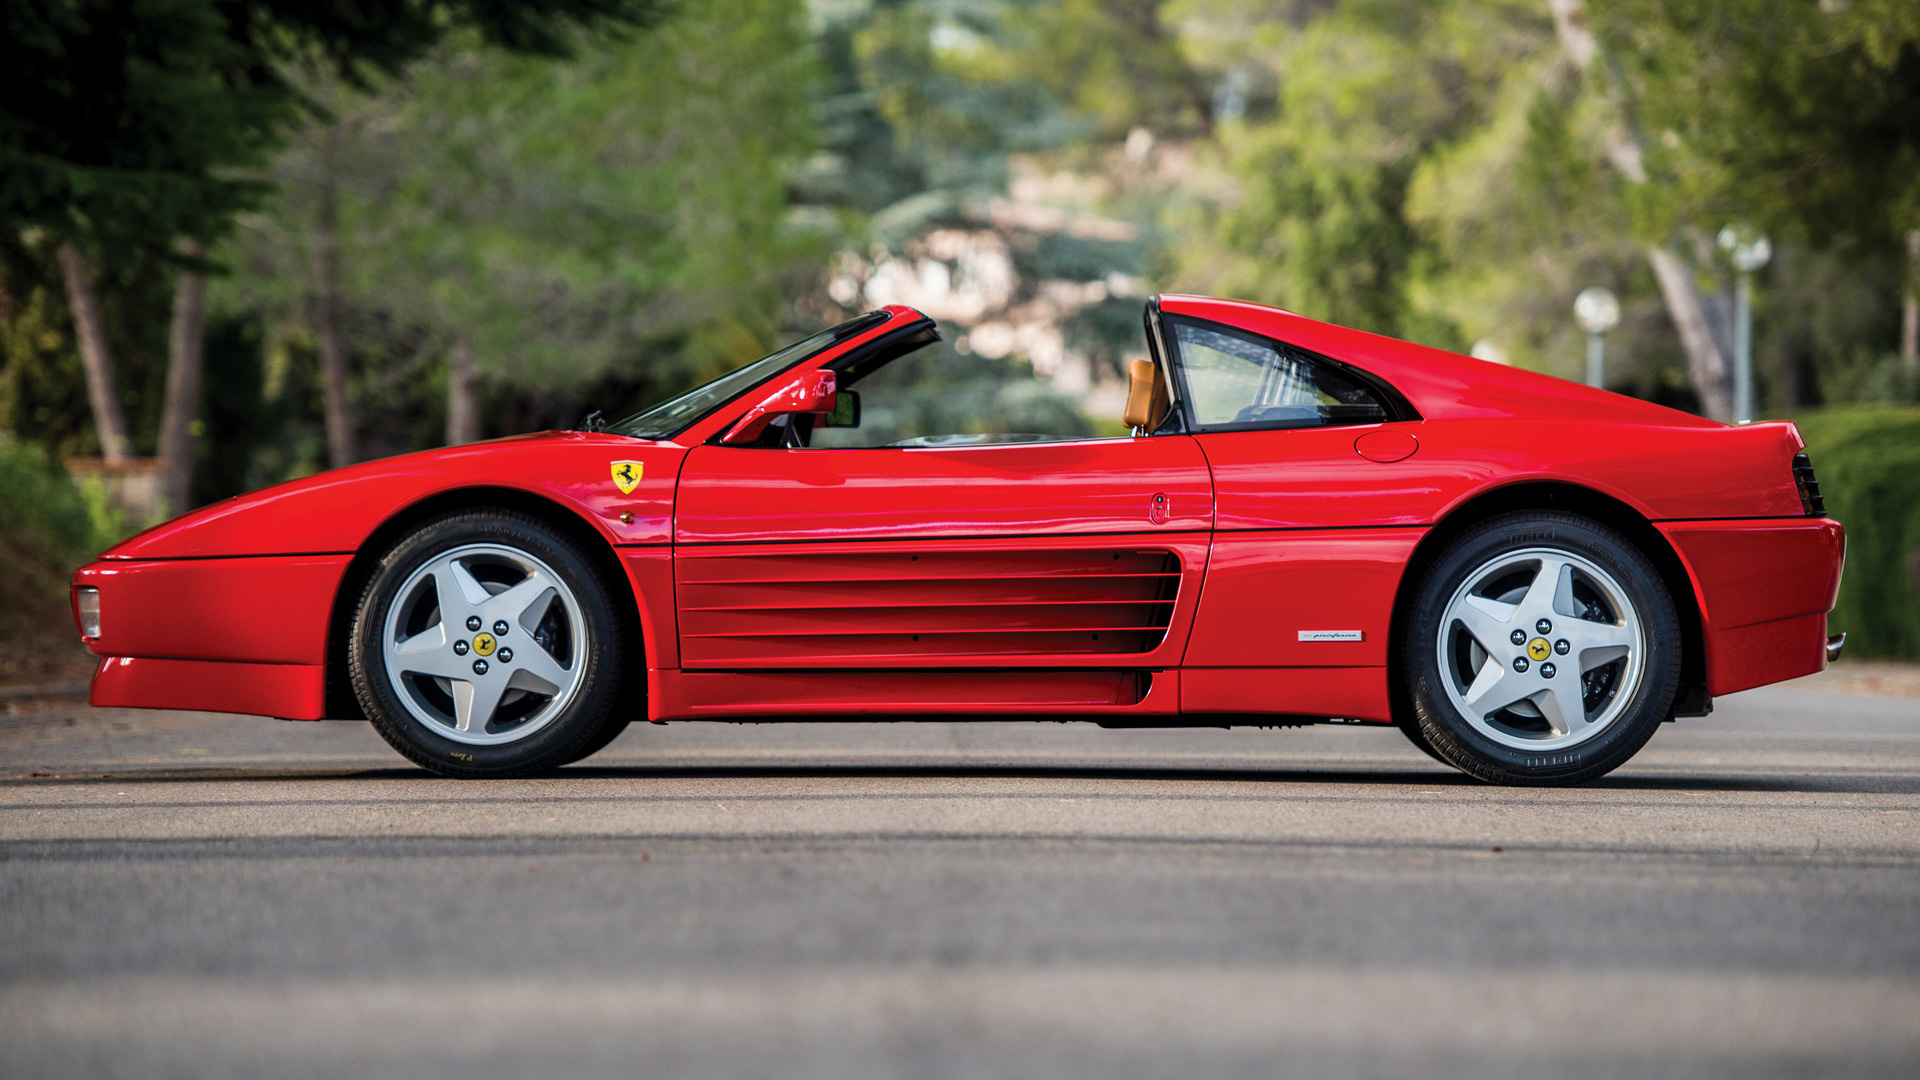 Ferrari Gts Wallpaper And HD Image Car Pixel